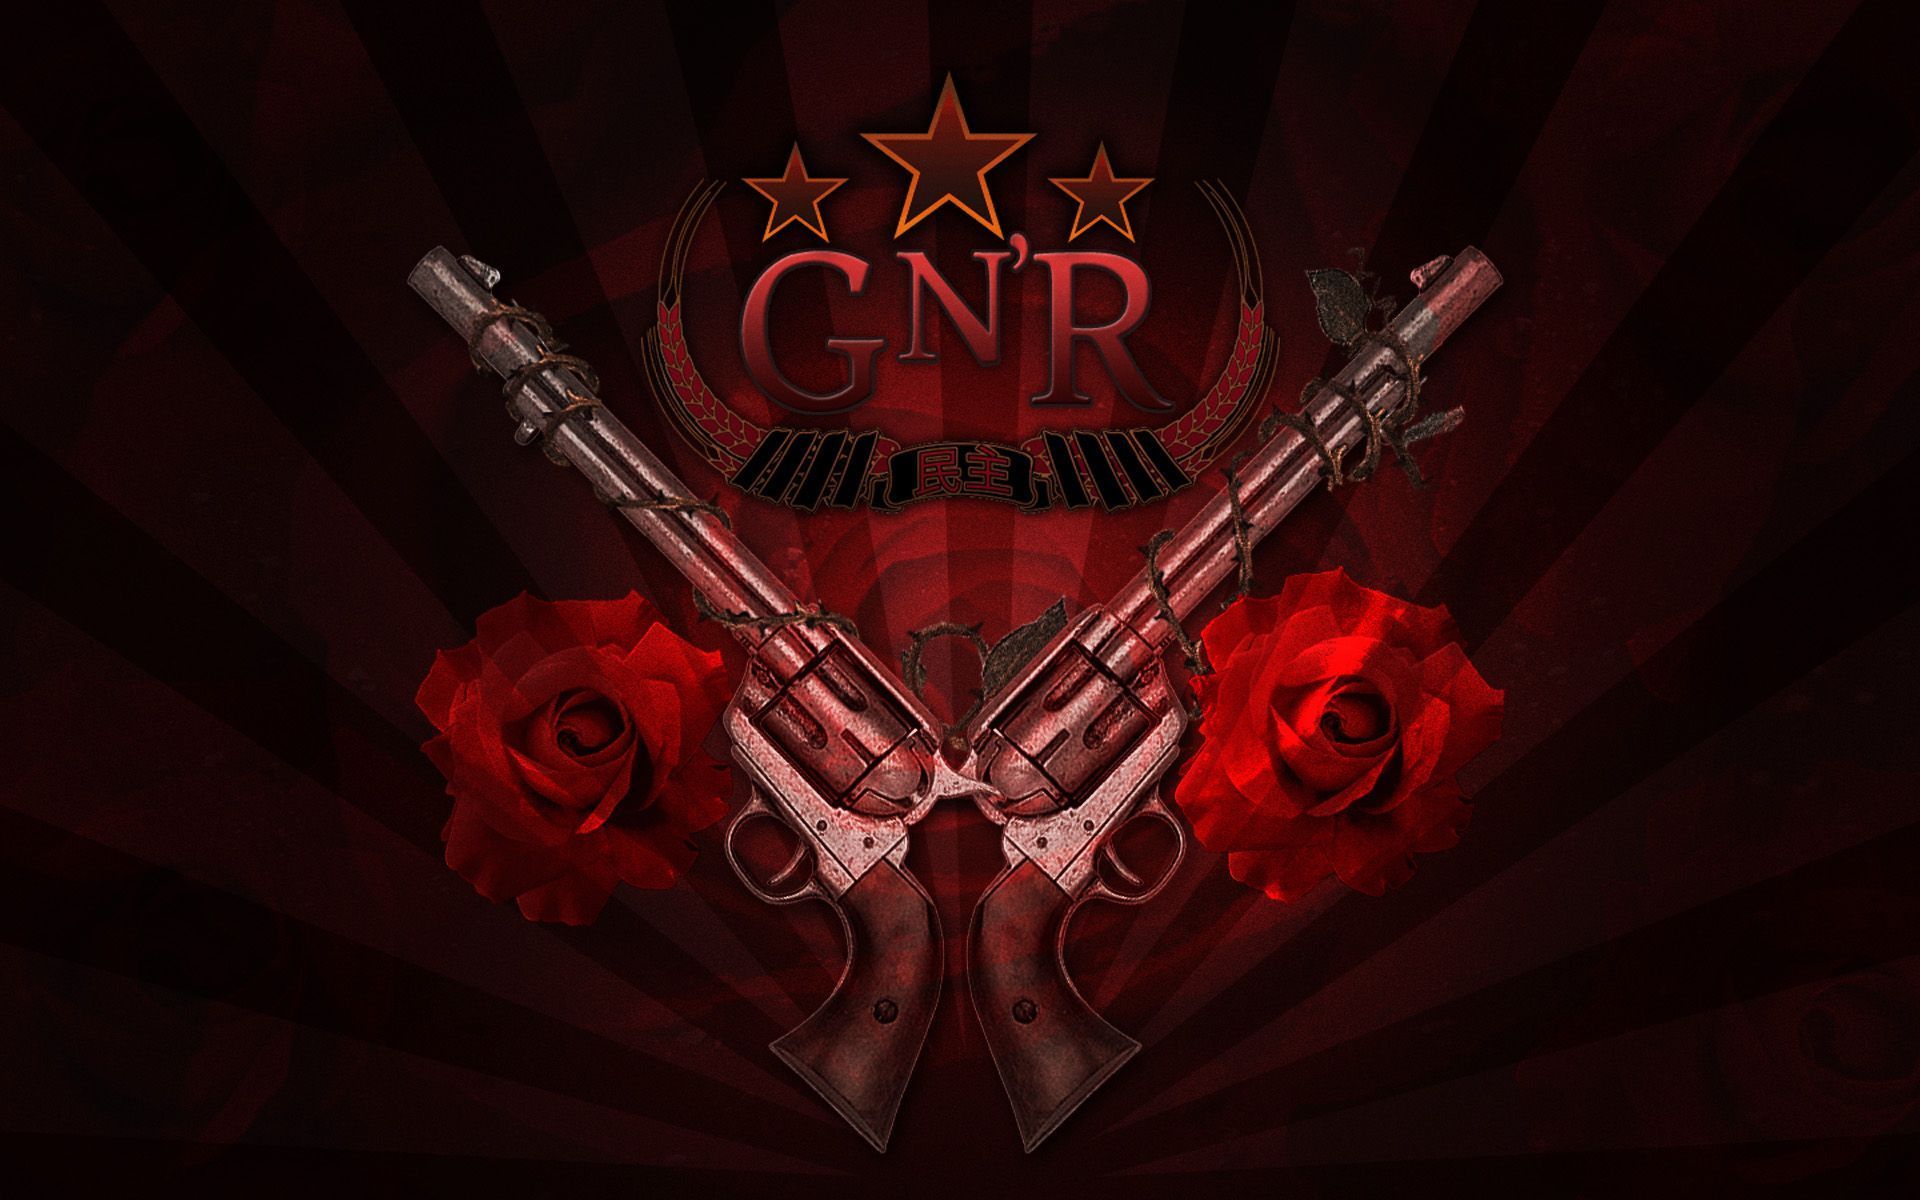 Guns N Roses heavy metal hard rock bands groups album cover